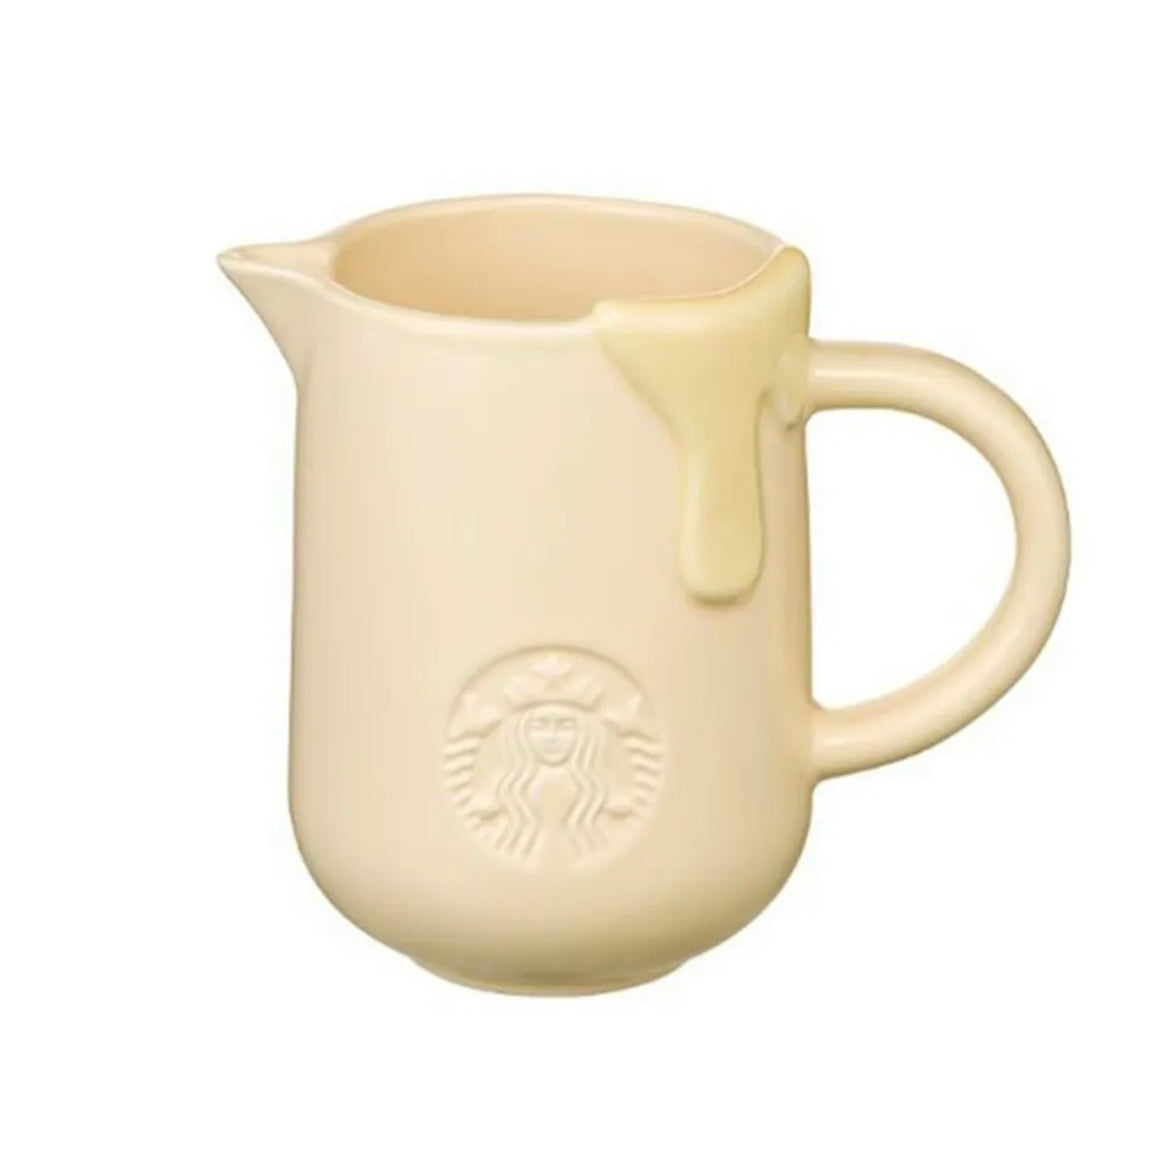 Starbucks Korea Butter Mug 12oz